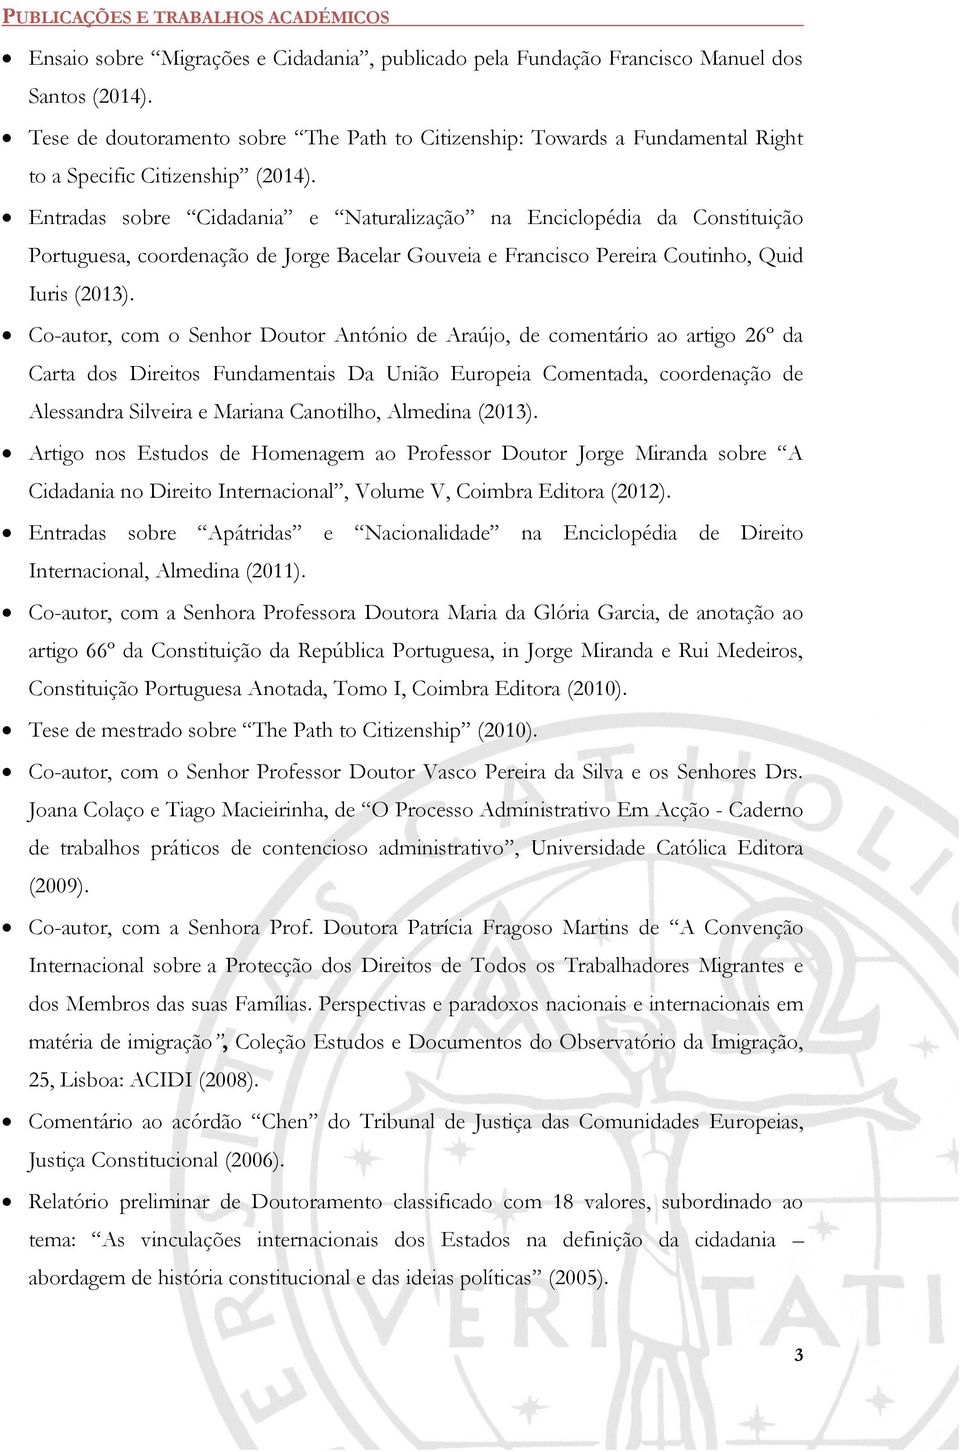 Entradas sobre Cidadania e Naturalização na Enciclopédia da Constituição Portuguesa, coordenação de Jorge Bacelar Gouveia e Francisco Pereira Coutinho, Quid Iuris (2013).